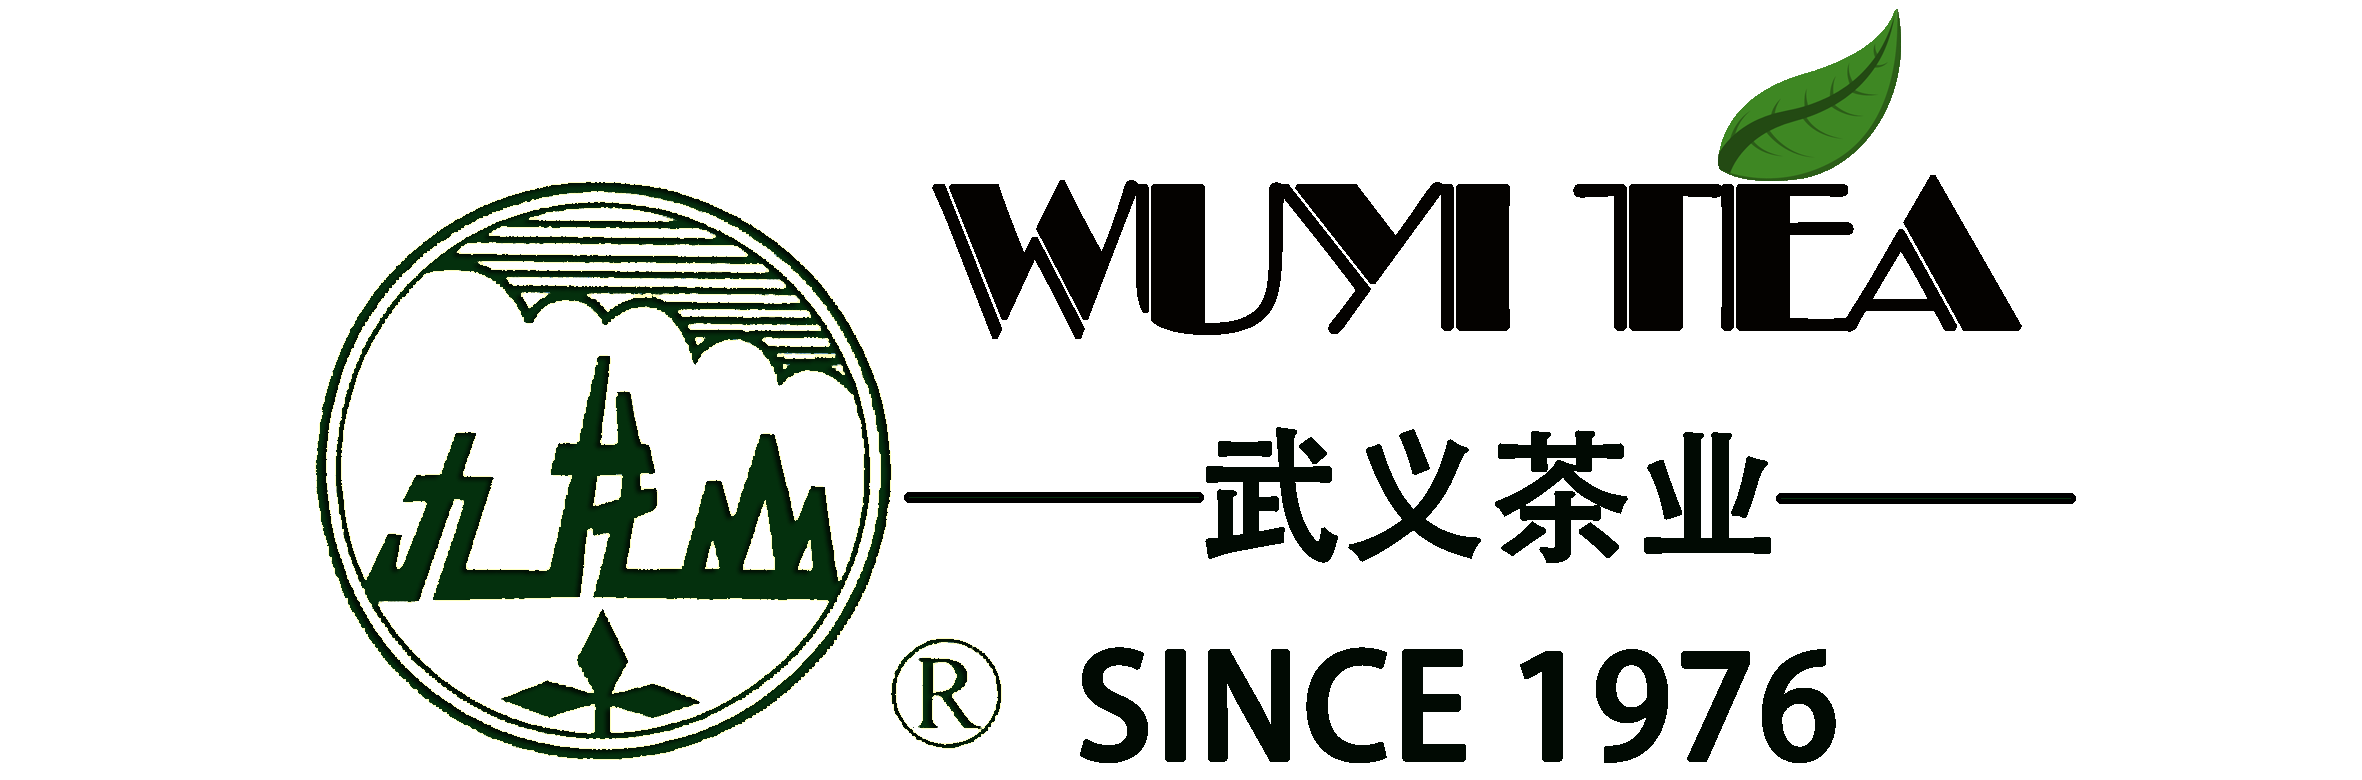 China Green Tea Yunwu grade one Suppliers, Manufacturers - Factory Direct Price - JIULONGSHAN